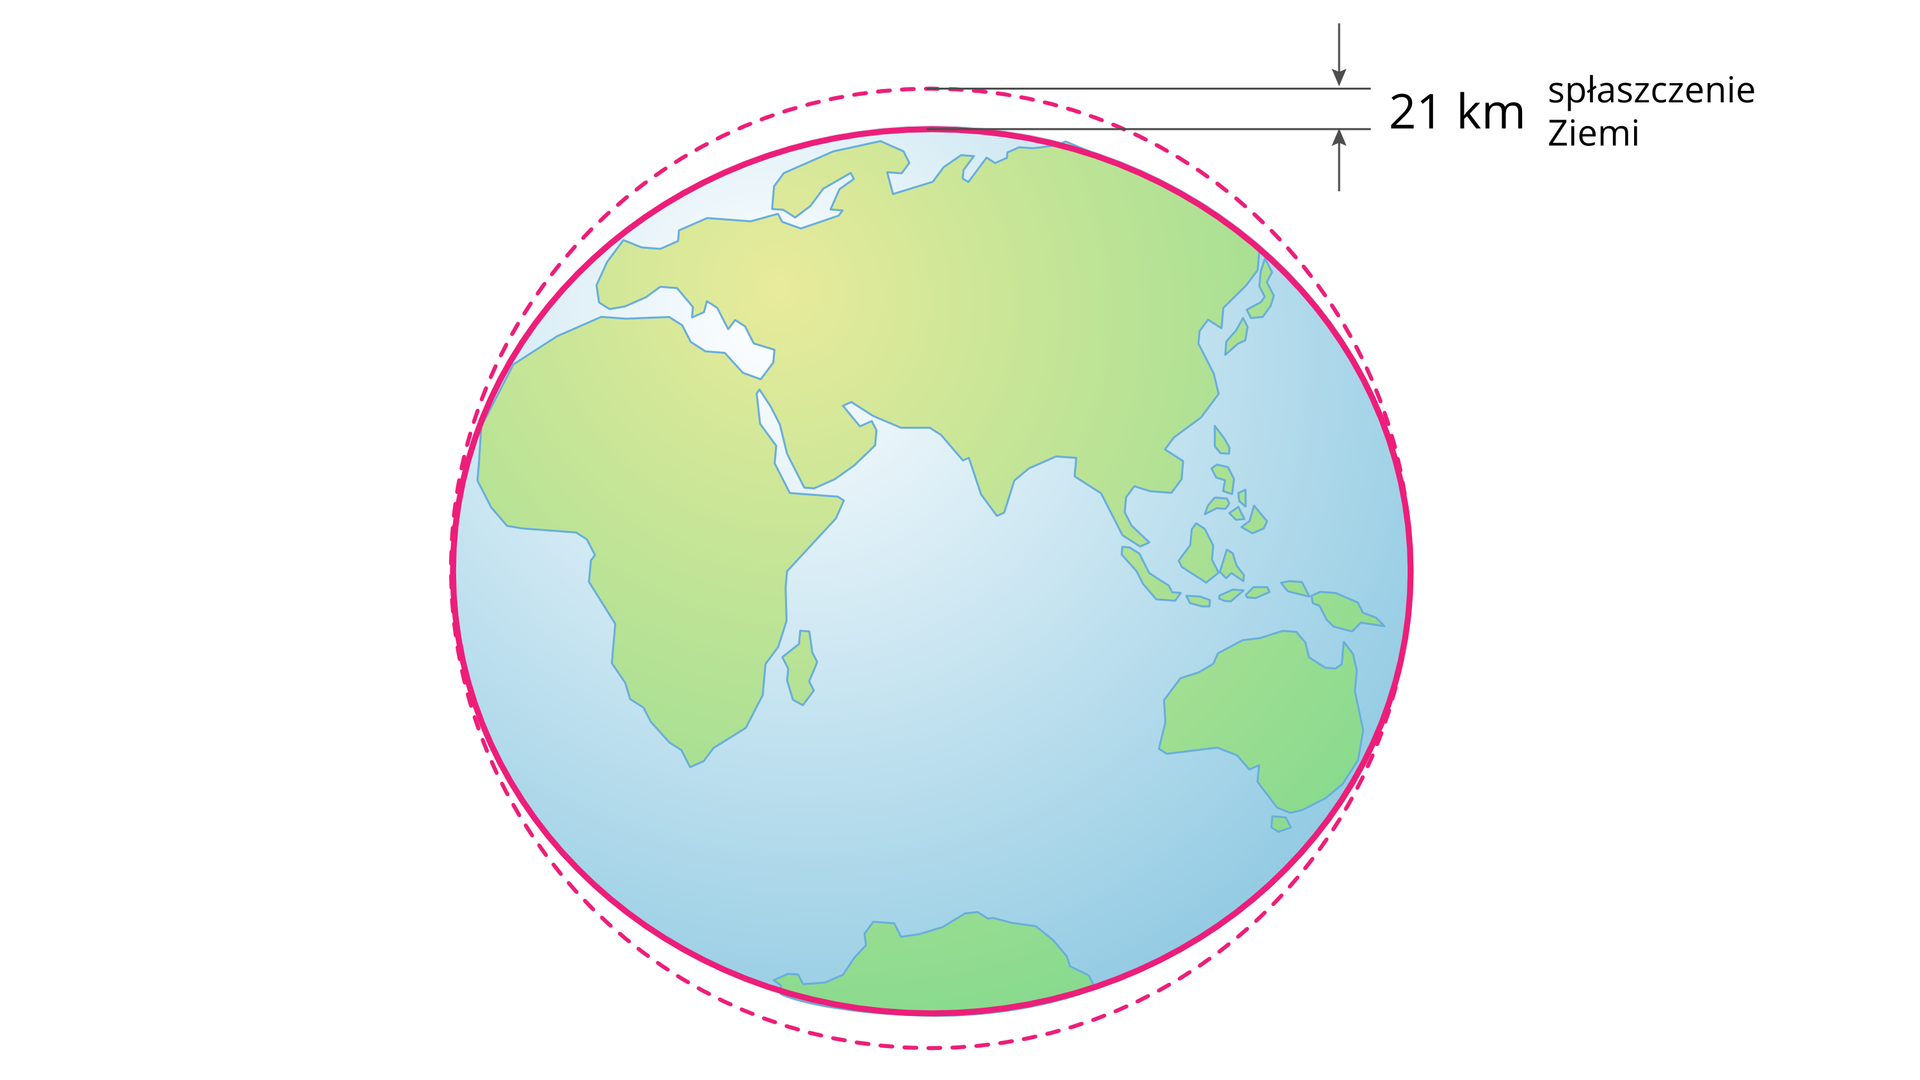 Ilustracja Ziemi. Ziemia jest nieco spłaszczona na biegunach. Z prawej strony umieszczono zapis 21 km oznaczajacy różnicę między średnicą Ziemi mierzoną najszerszym i najwięszym miejscu.